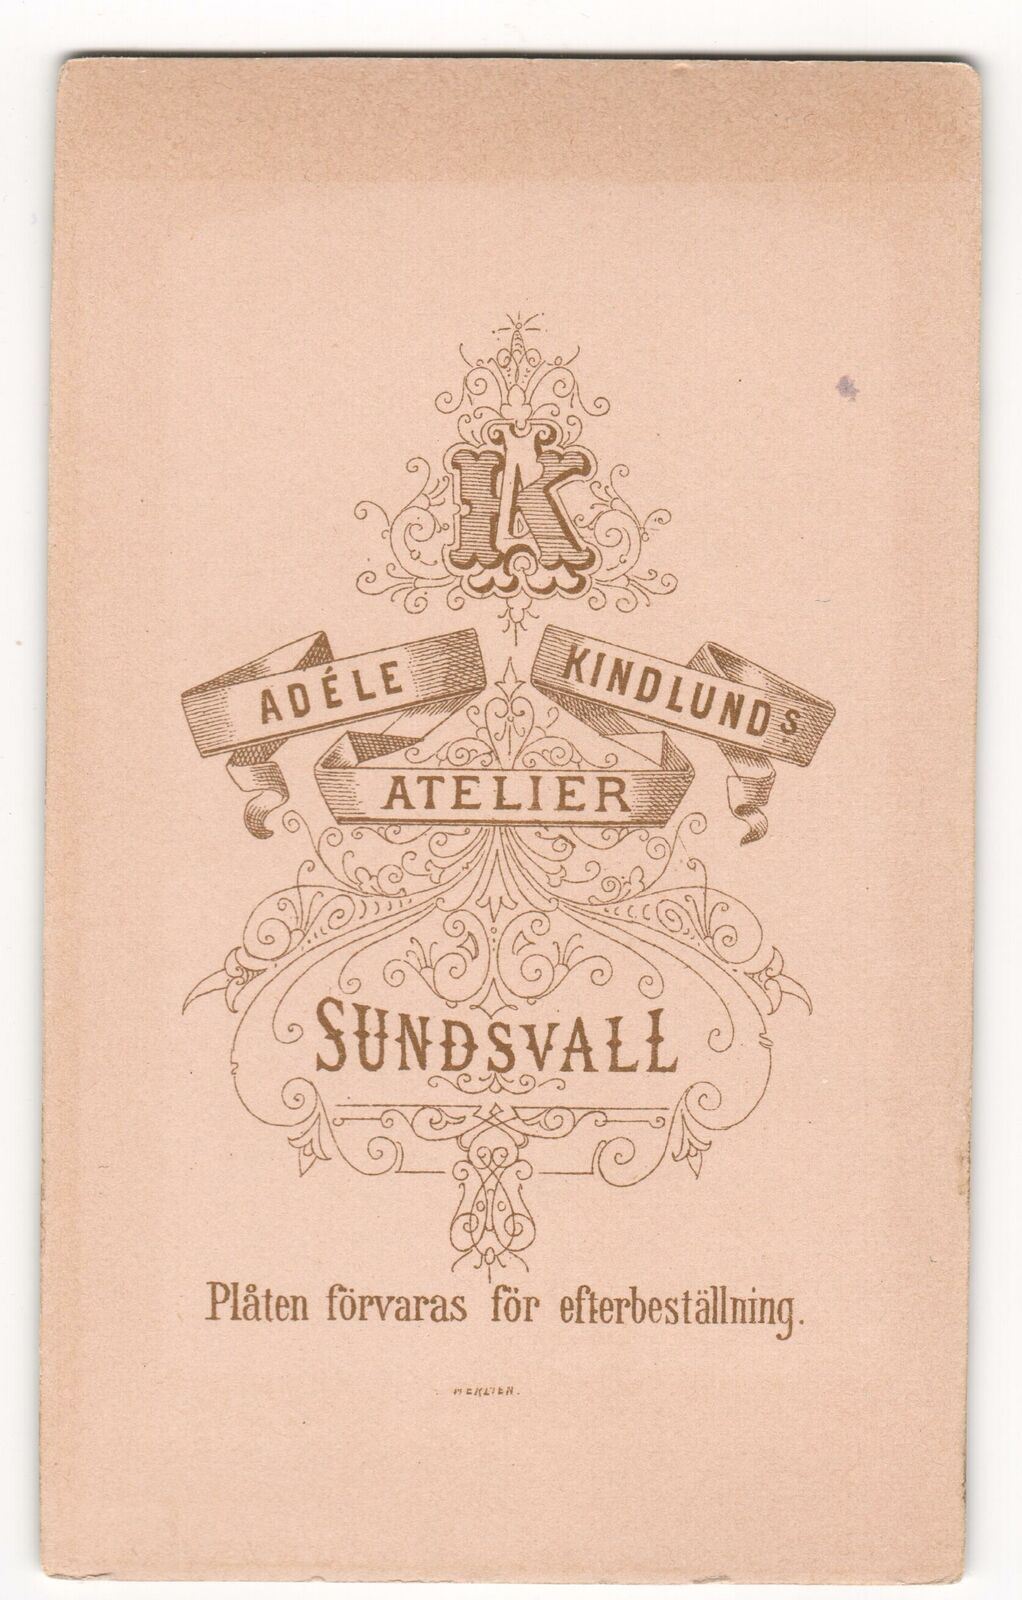 Antique Carte De Visite - Sweden - Adele kindlund - Family - Photograph Card - Dahlströms Fine Art